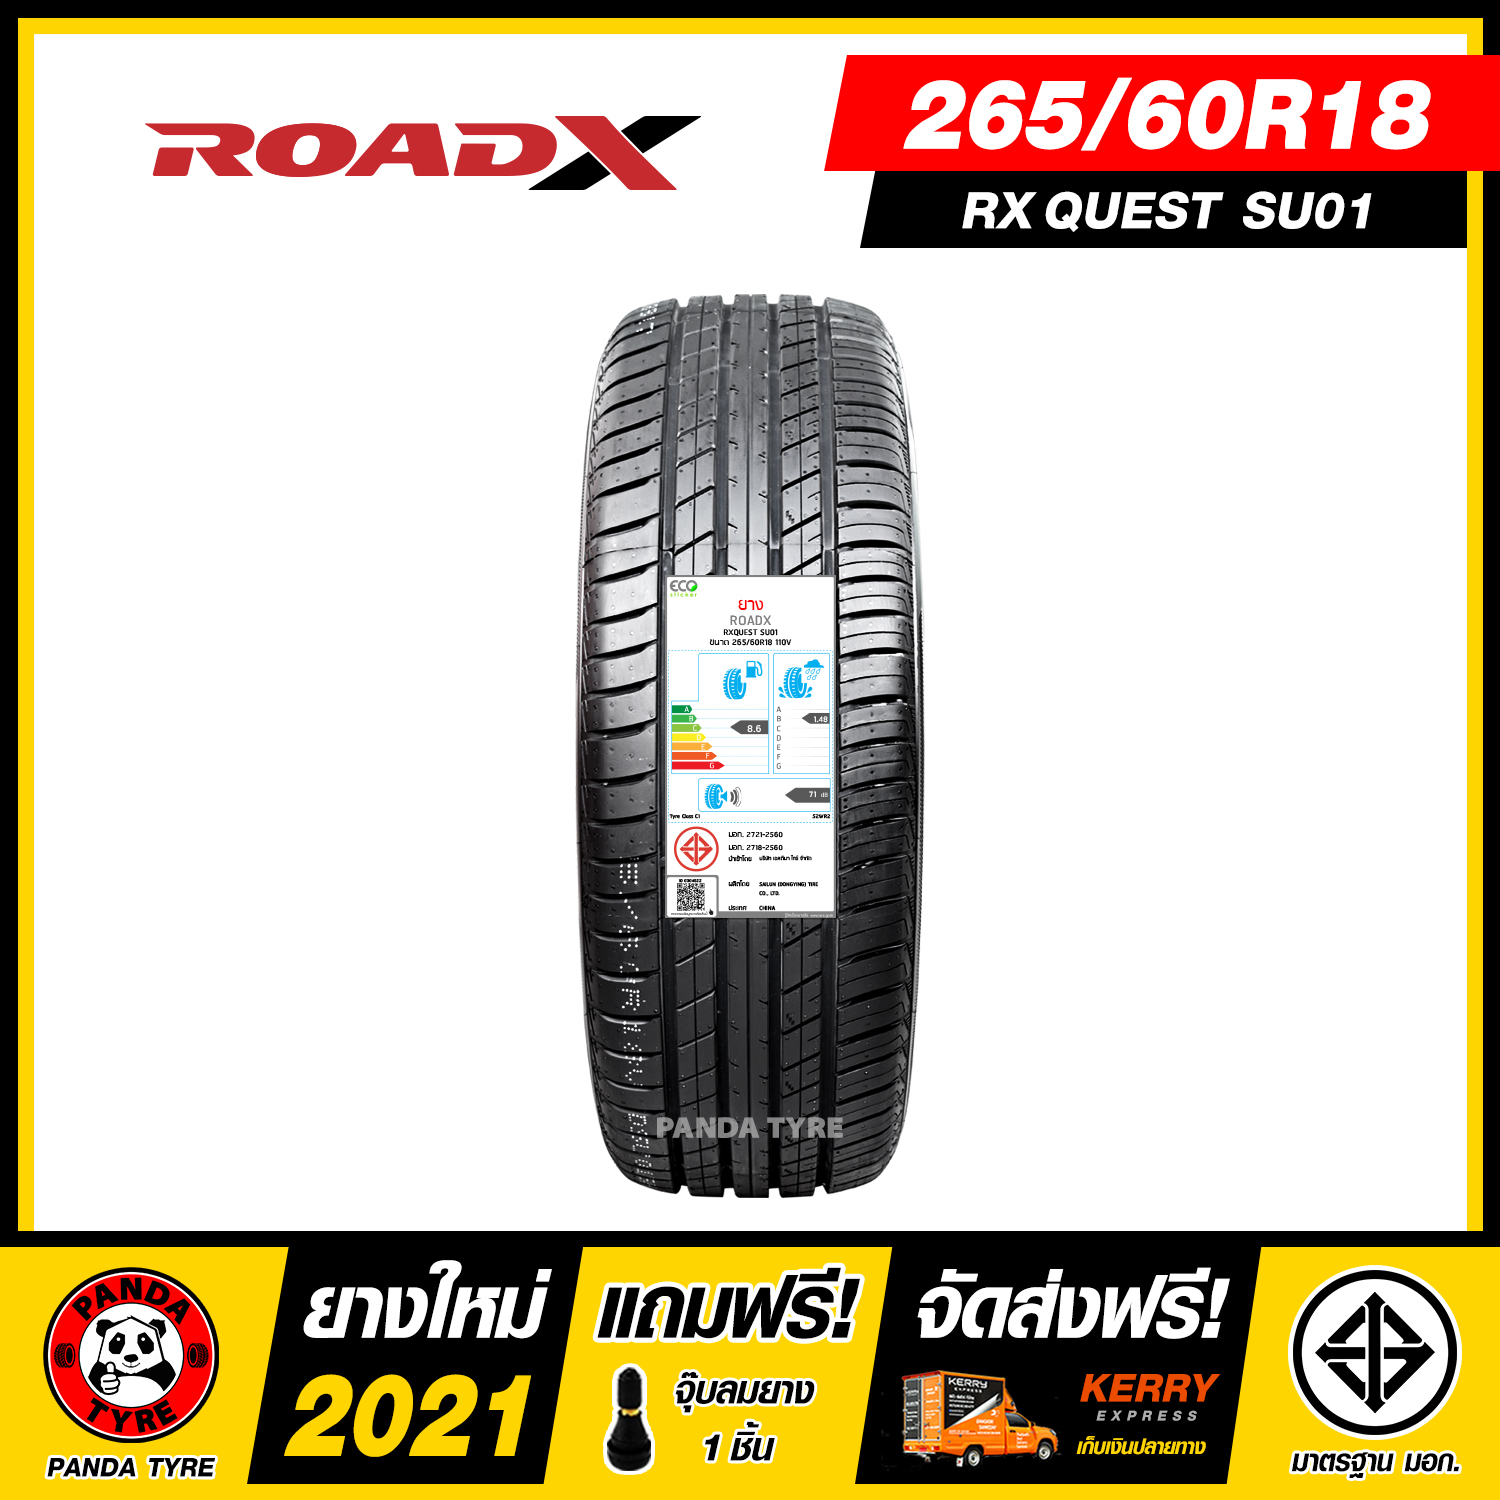 ROADX 265/60R18 ยางรถยนต์ขอบ18 รุ่น RXQUEST SU01 - 1 เส้น (ยางใหม่ผลิตปี 2021)